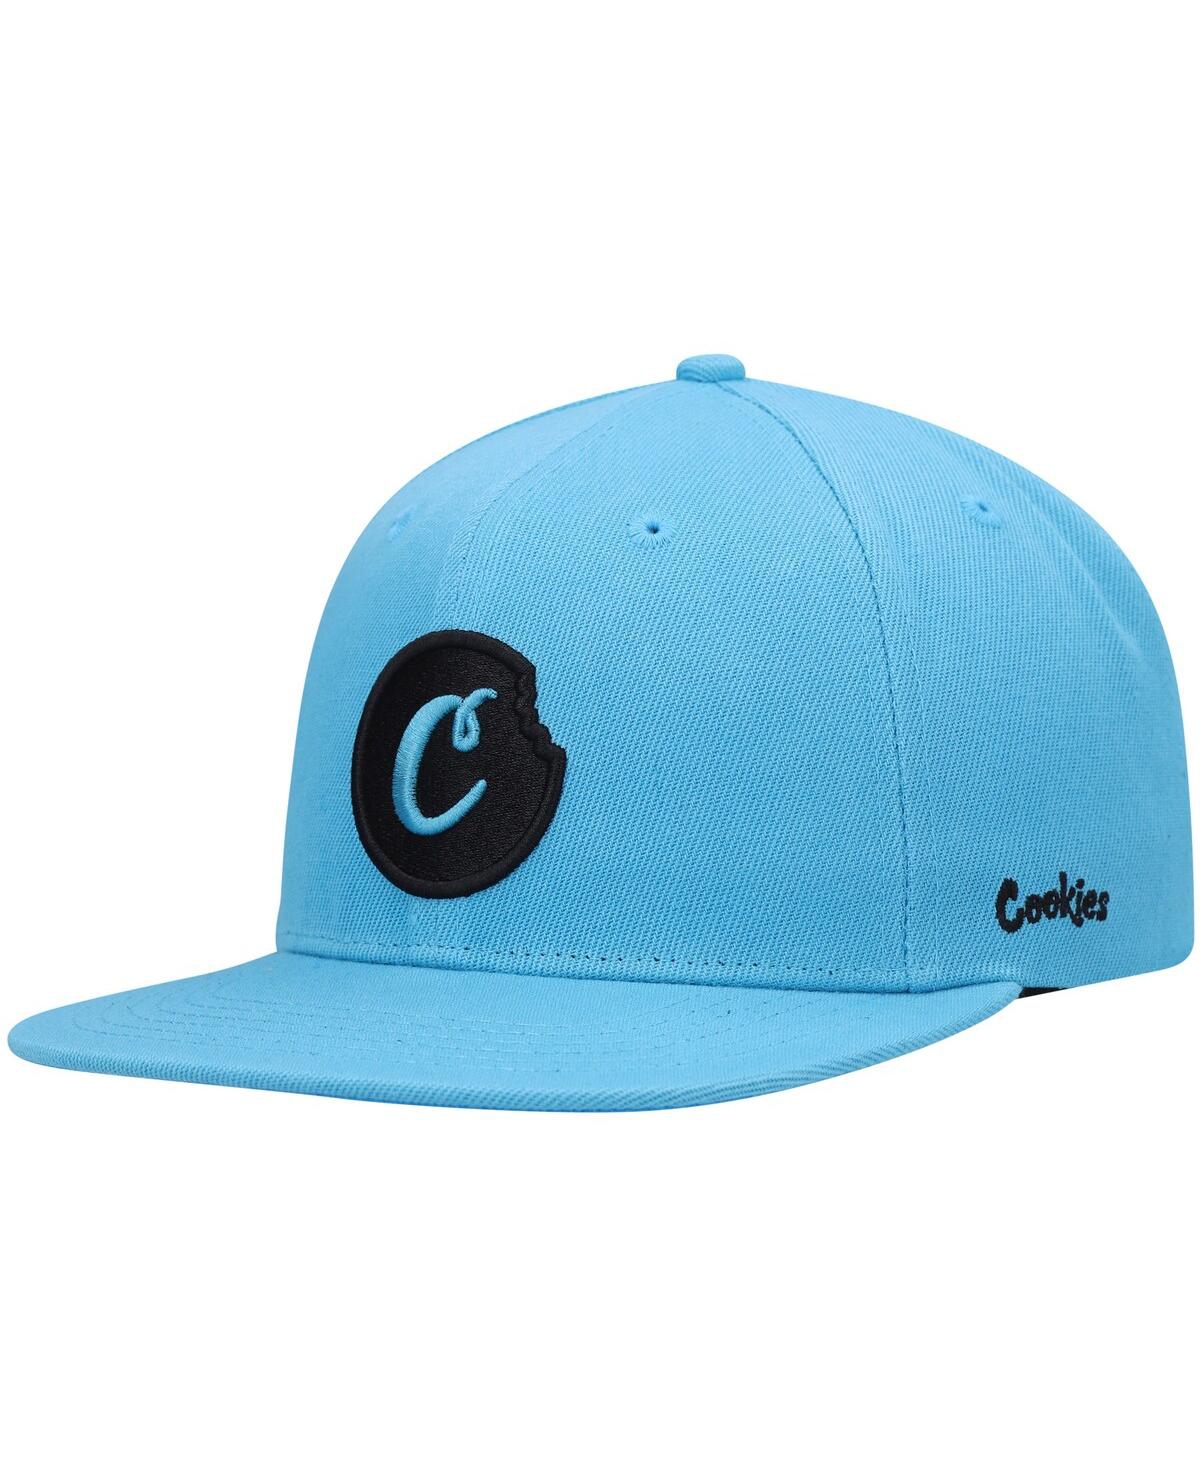 Cookies Men's  Blue C-bite Solid Snapback Hat